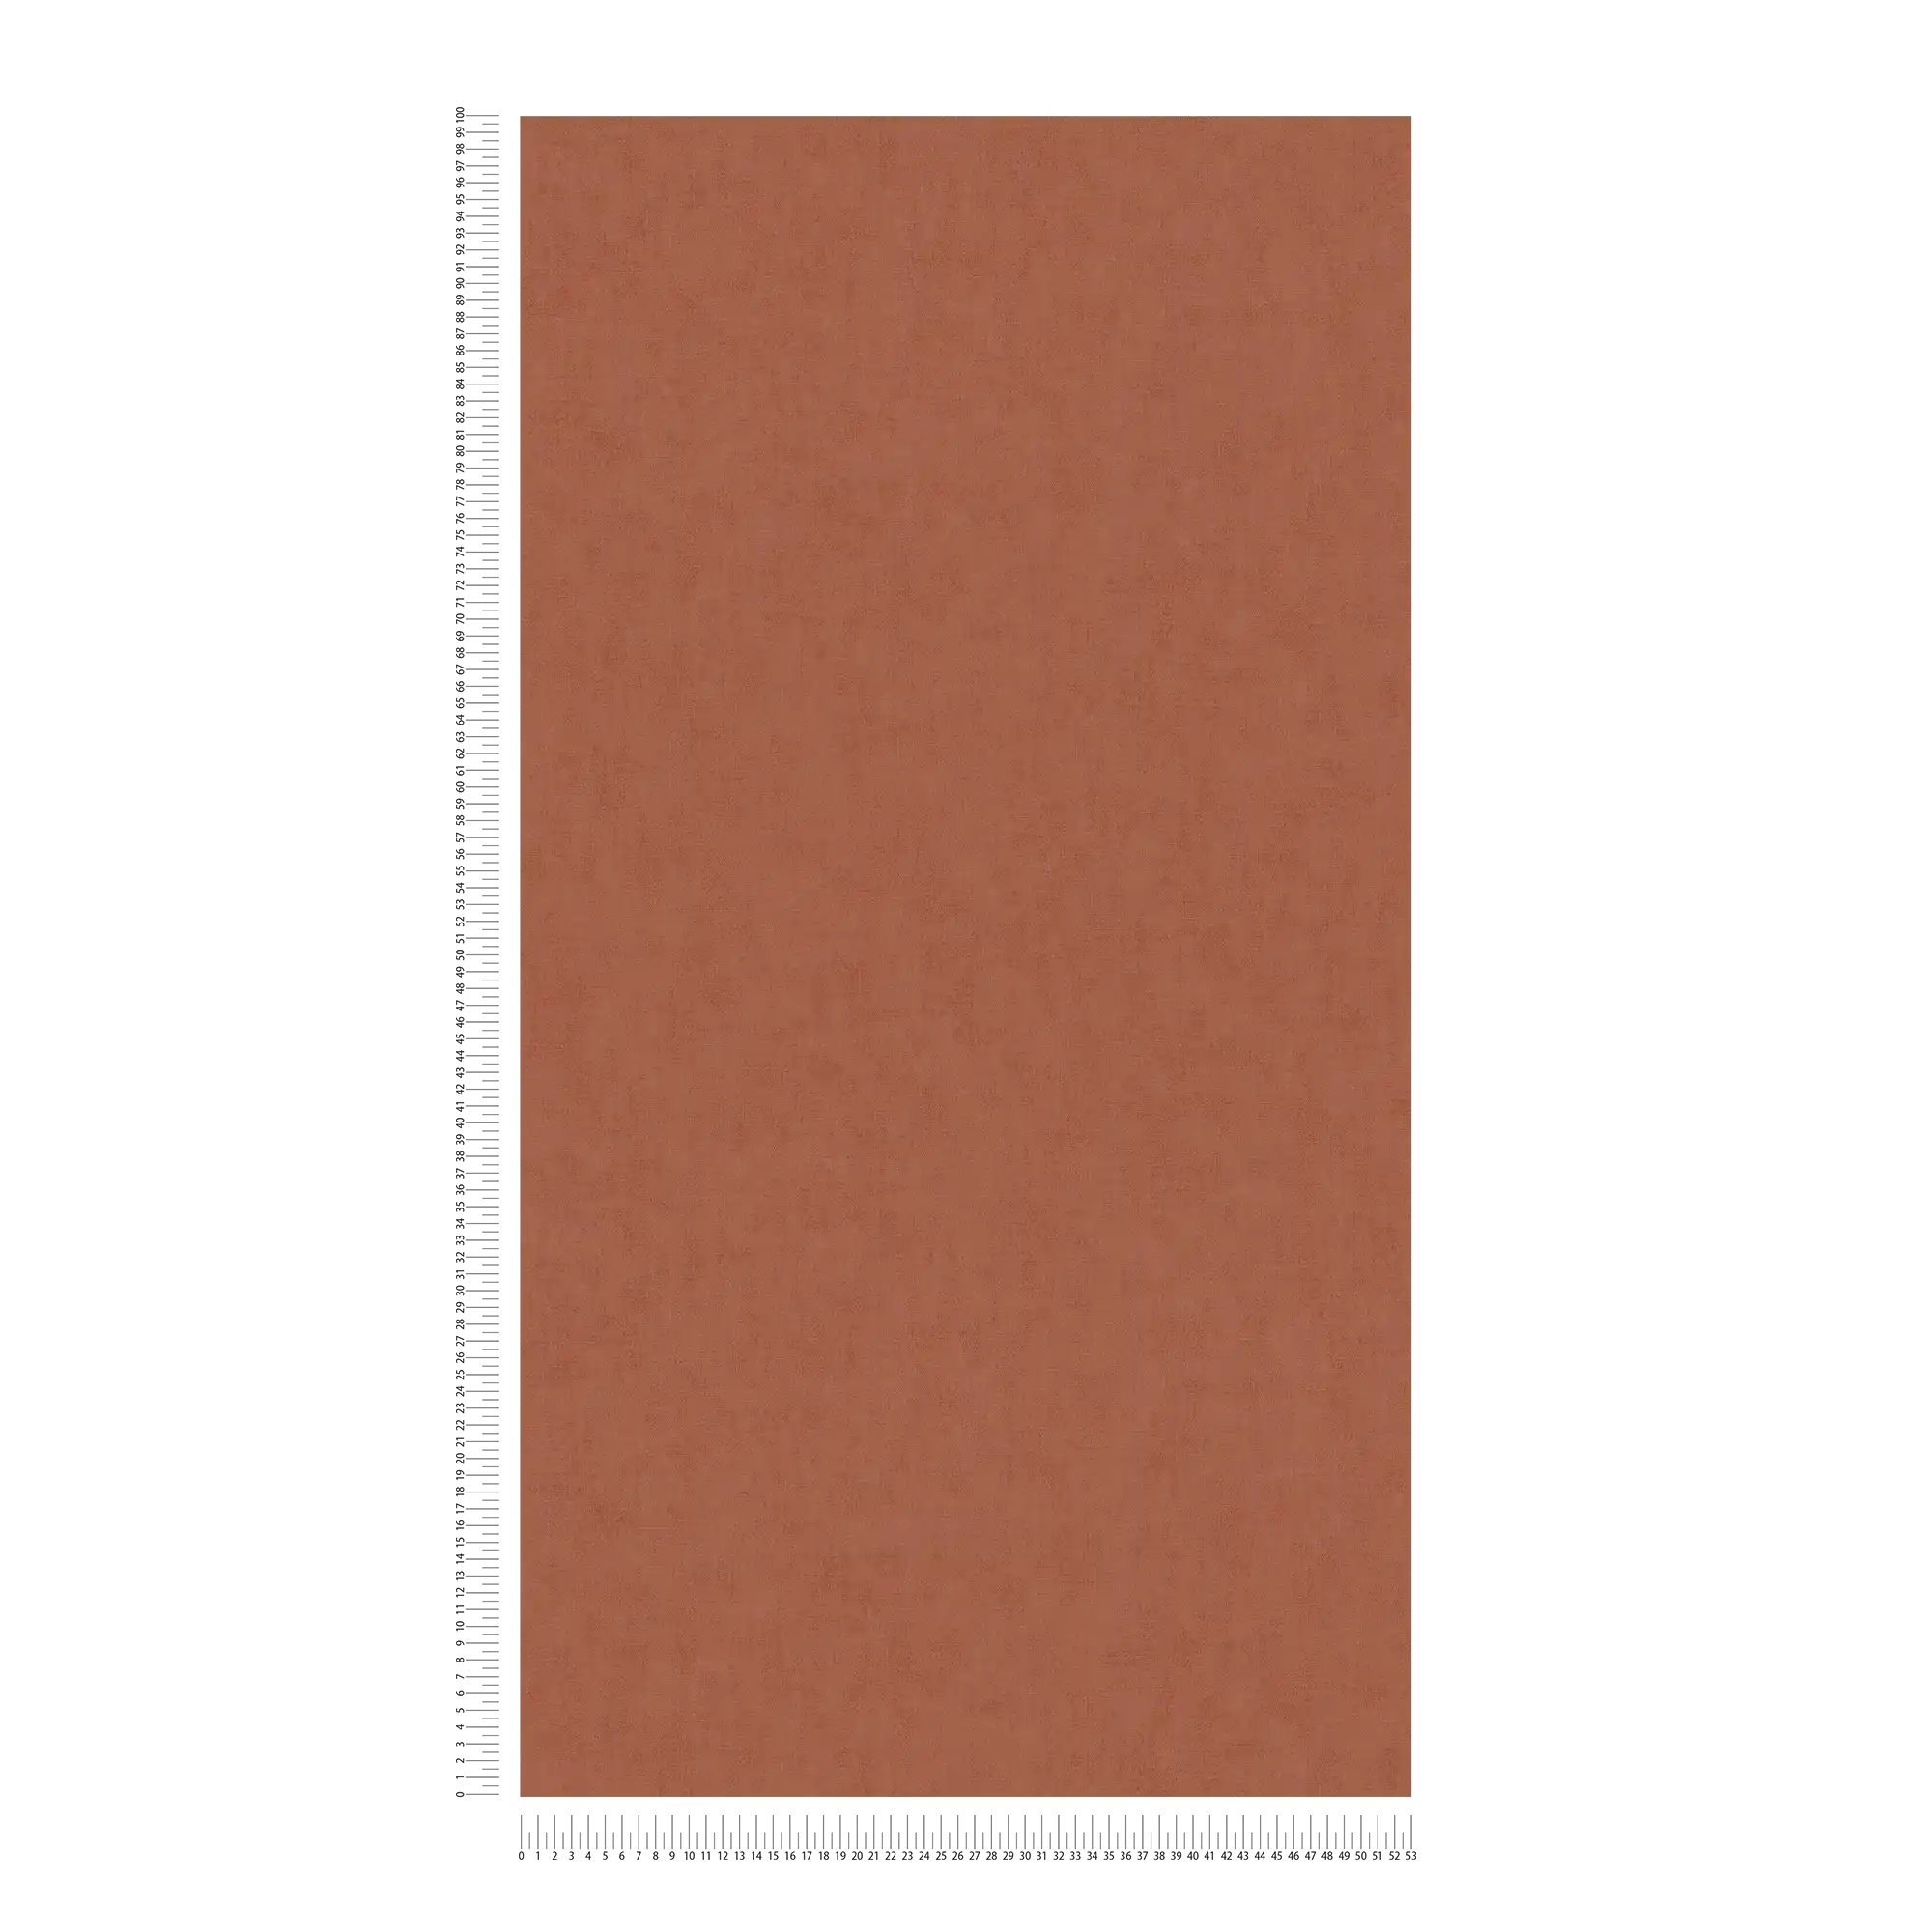             Linnenachtig vliesbehang met een subtiel patroon - bruin, oranje
        